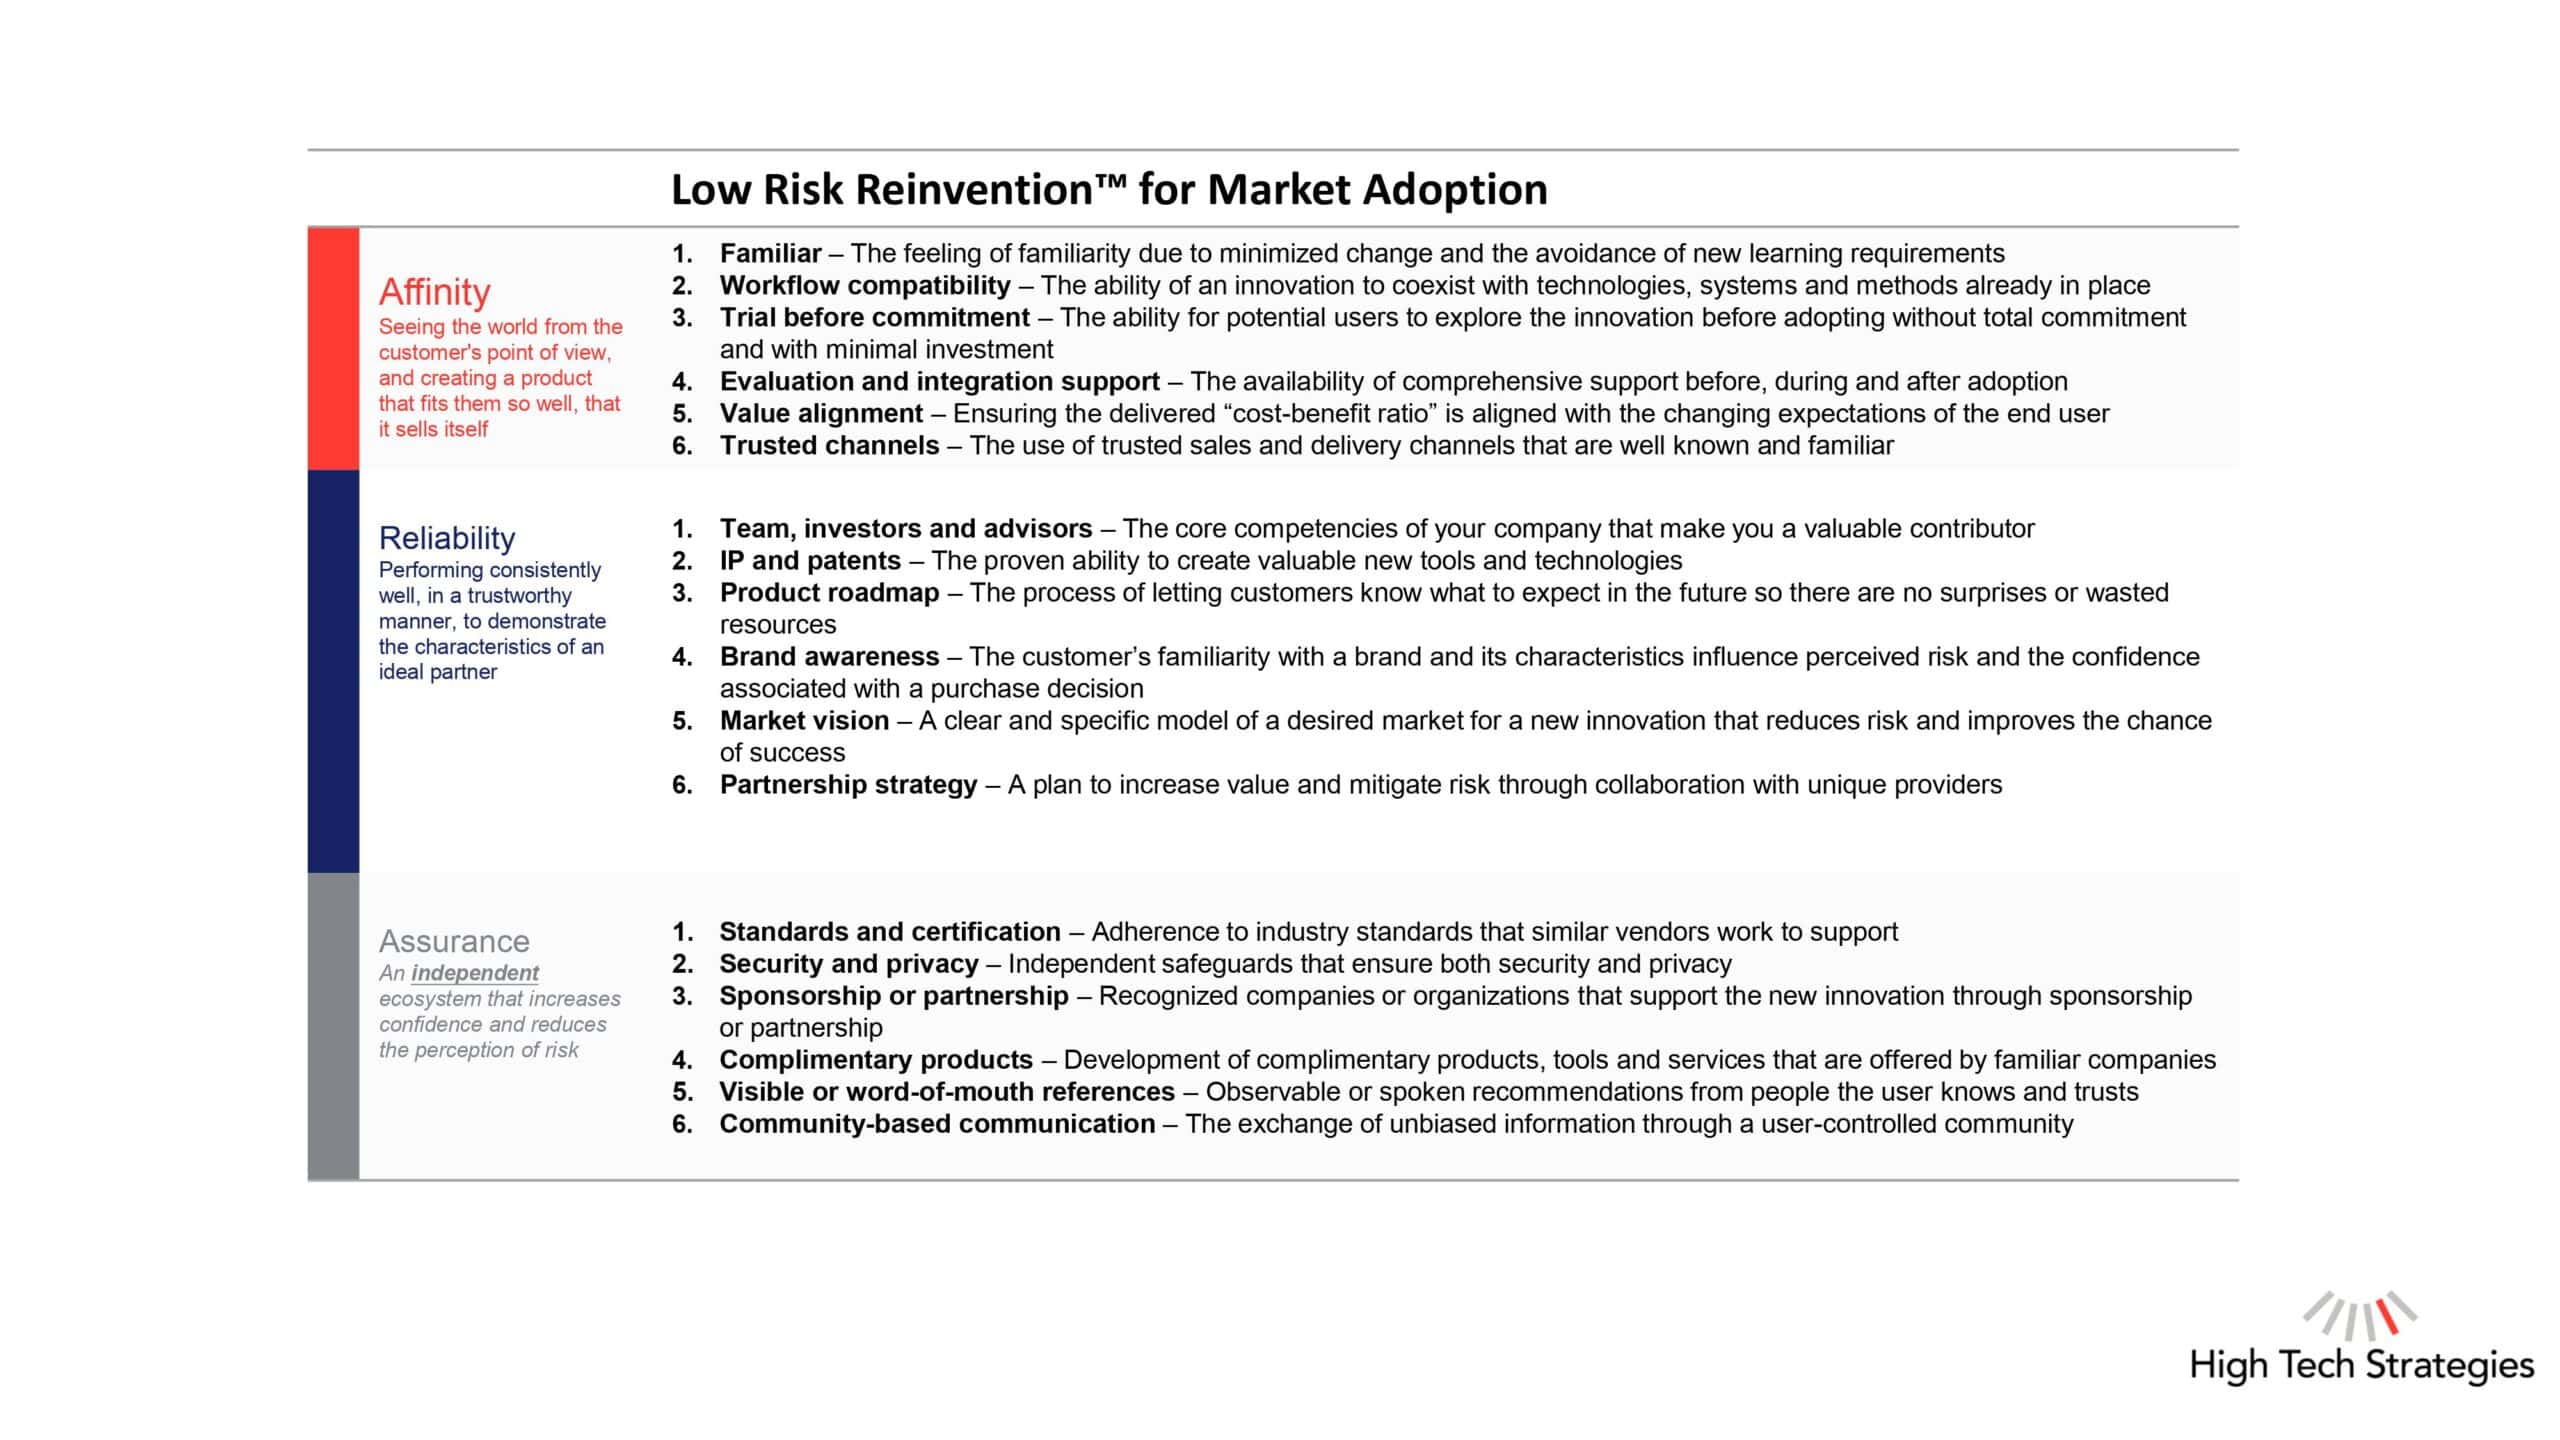 Low Risk Reinvention Slide 4